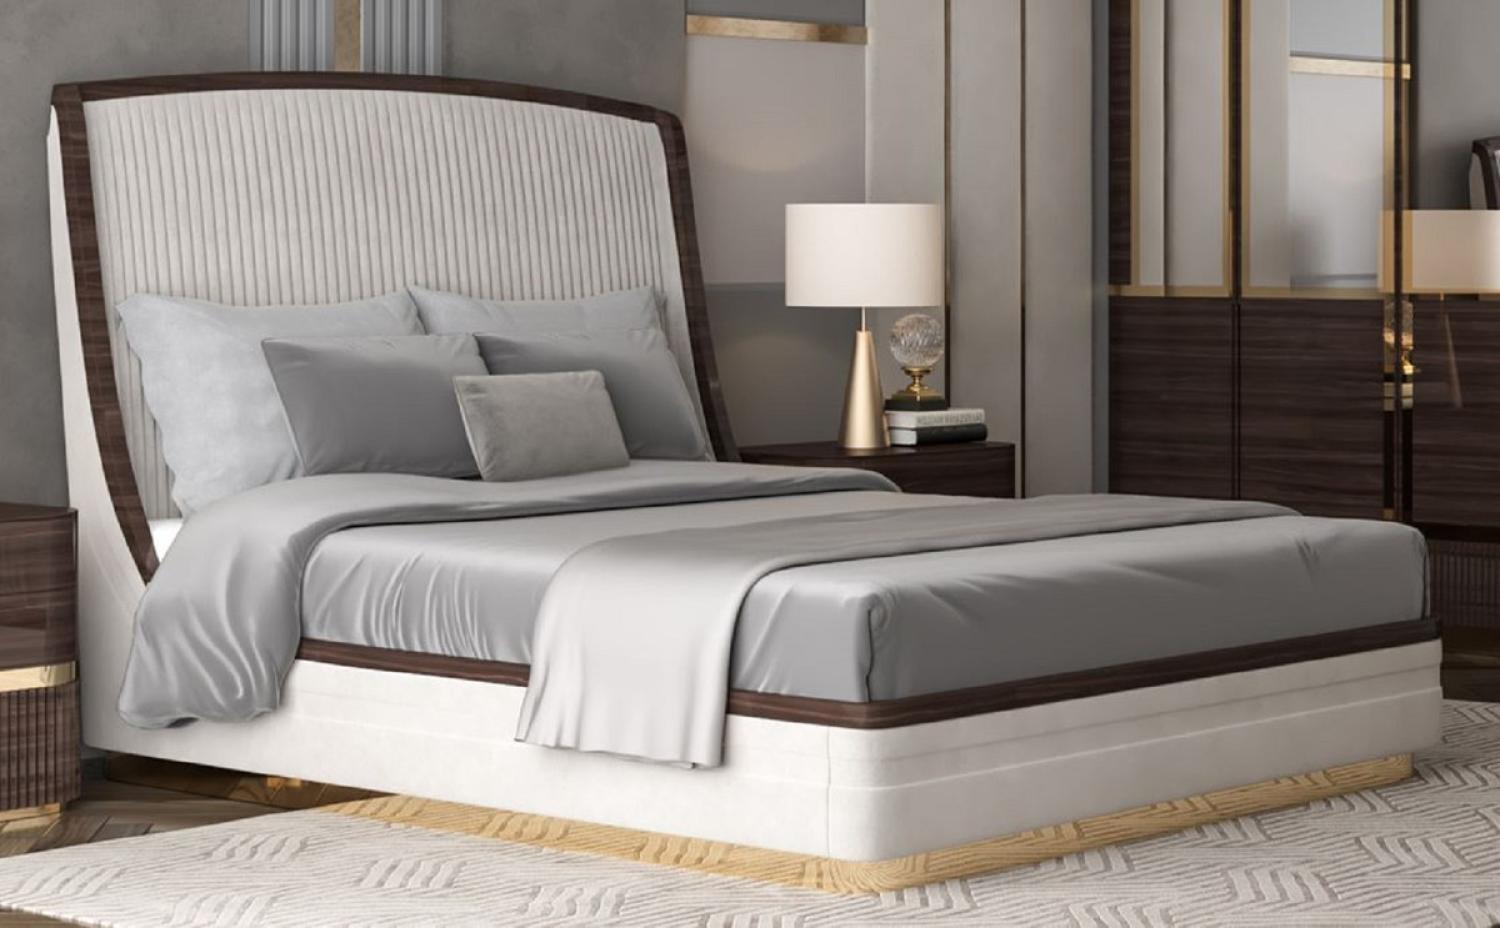 Casa Padrino Luxus Doppelbett Weiß / Dunkelbraun / Gold - Edles Massivholz Bett mit Kopfteil - Schlafzimmer Möbel - Hotel Möbel - Luxus Möbel - Schlafzimmer Einrichtung - Luxus Einrichtung Bild 1